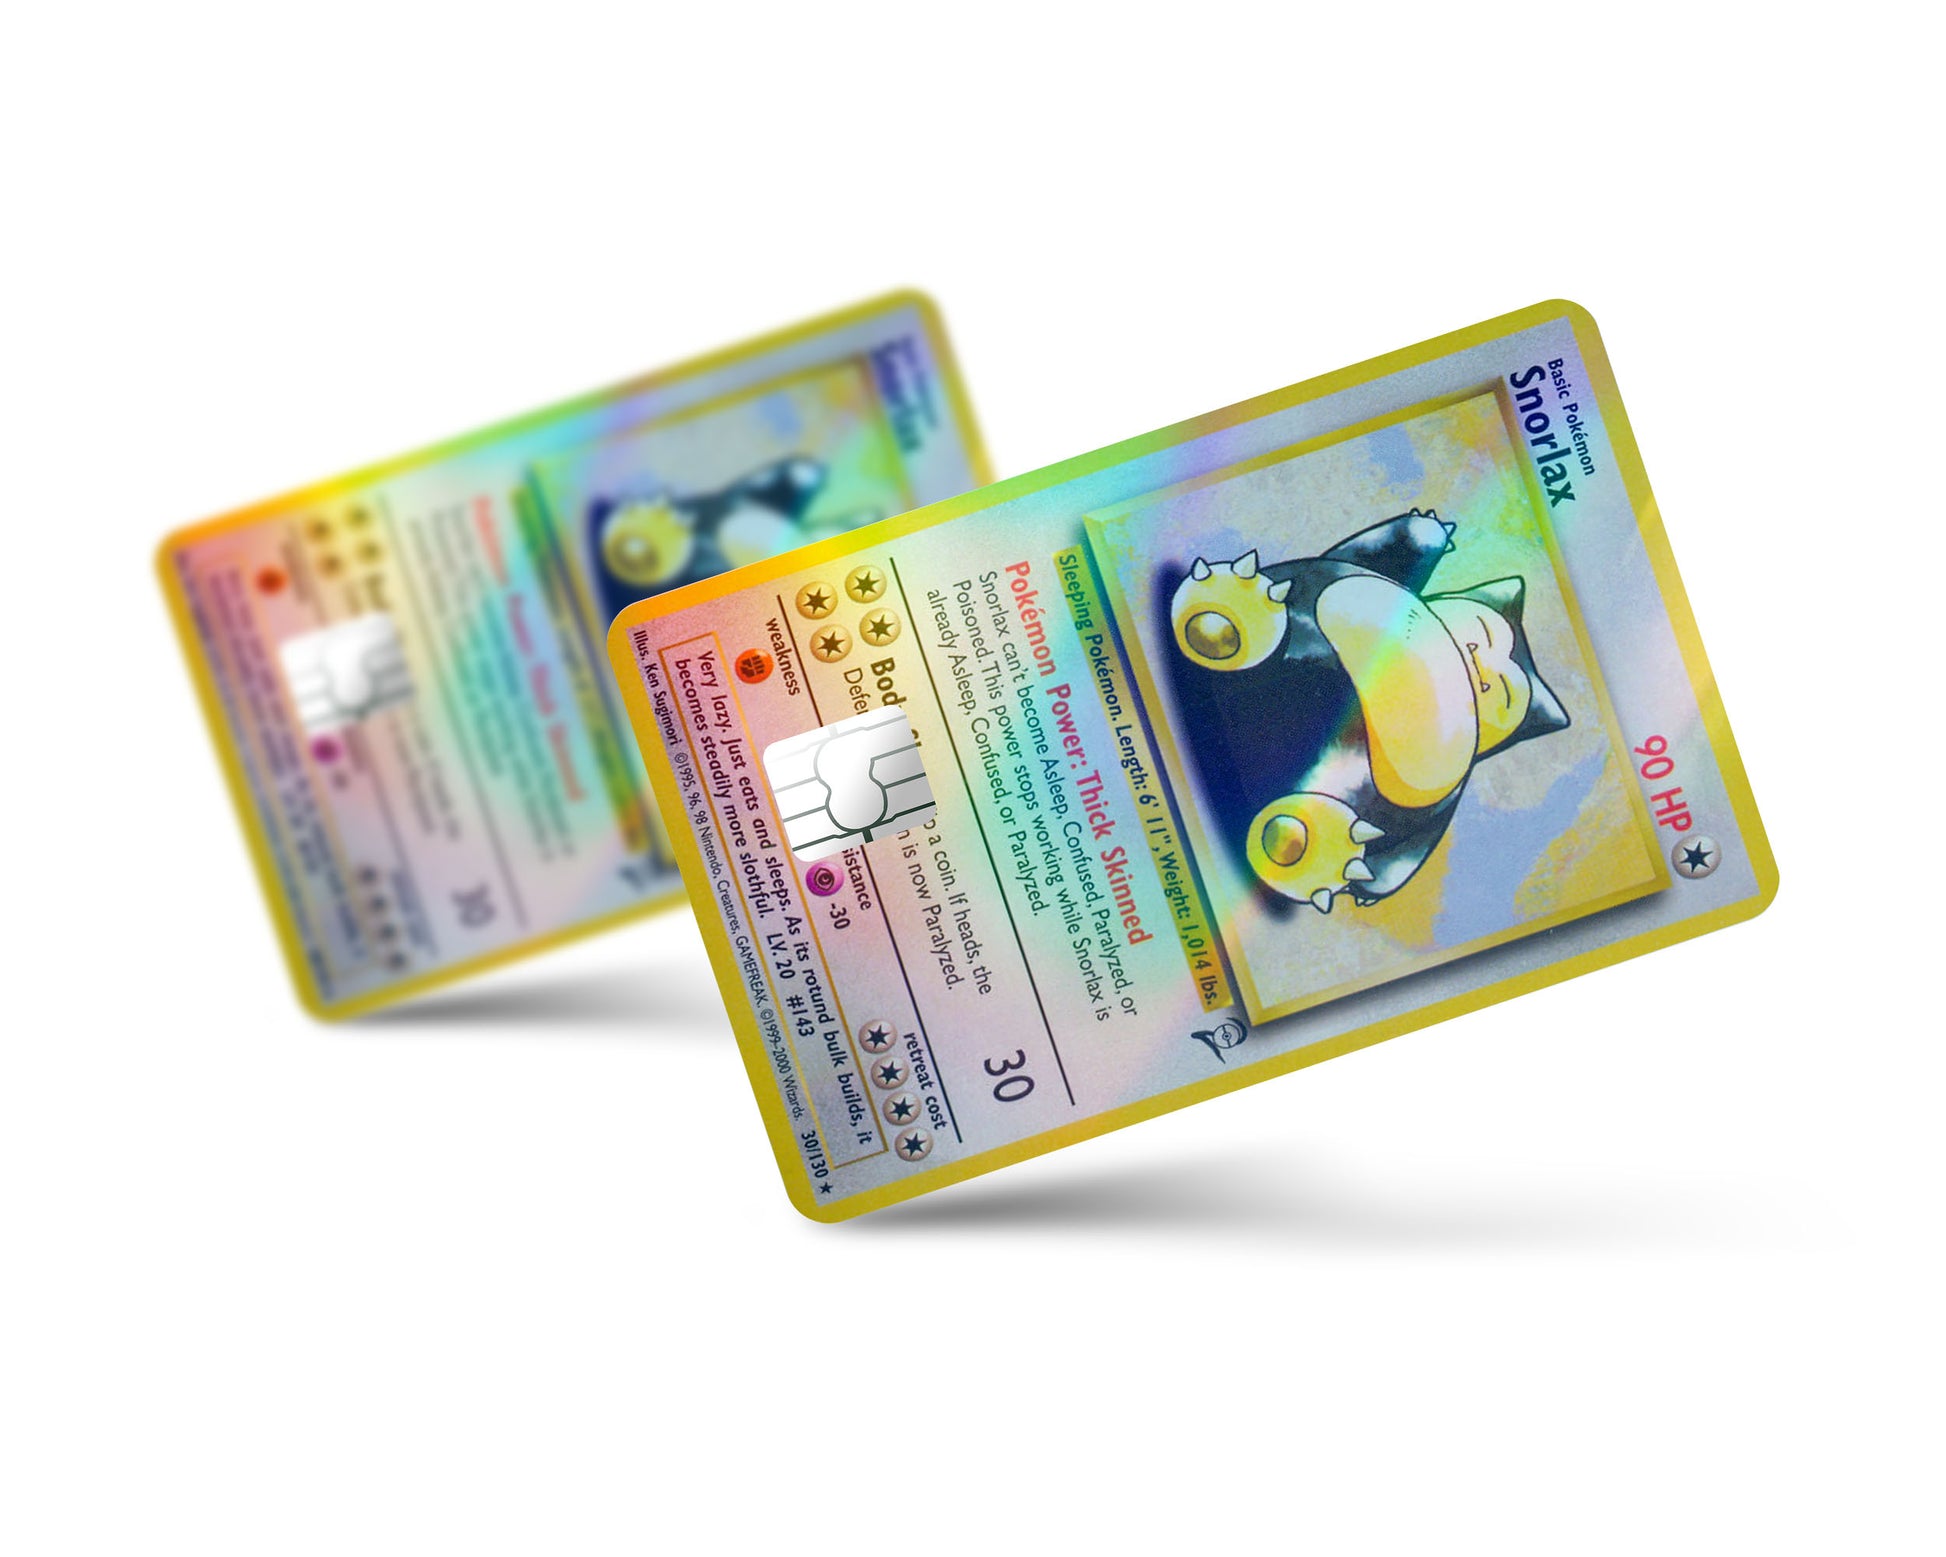 Snorlax Pokemon Card Credit Card Skin